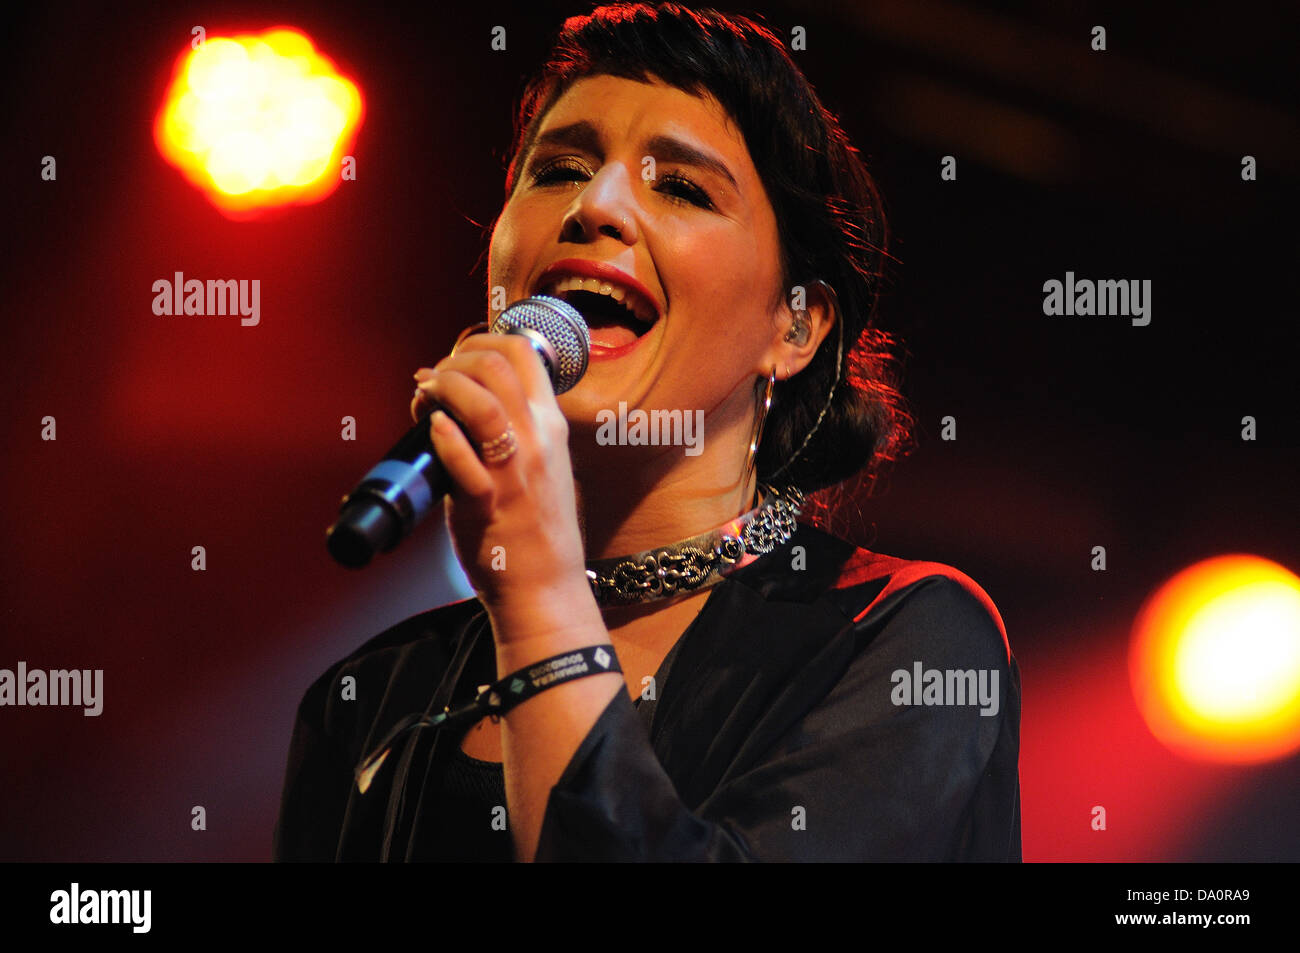 BARCELONA - MAY 23: Jessie Ware, a British singer-songwriter, performs at Heineken Primavera Sound 2013 Festival. Stock Photo